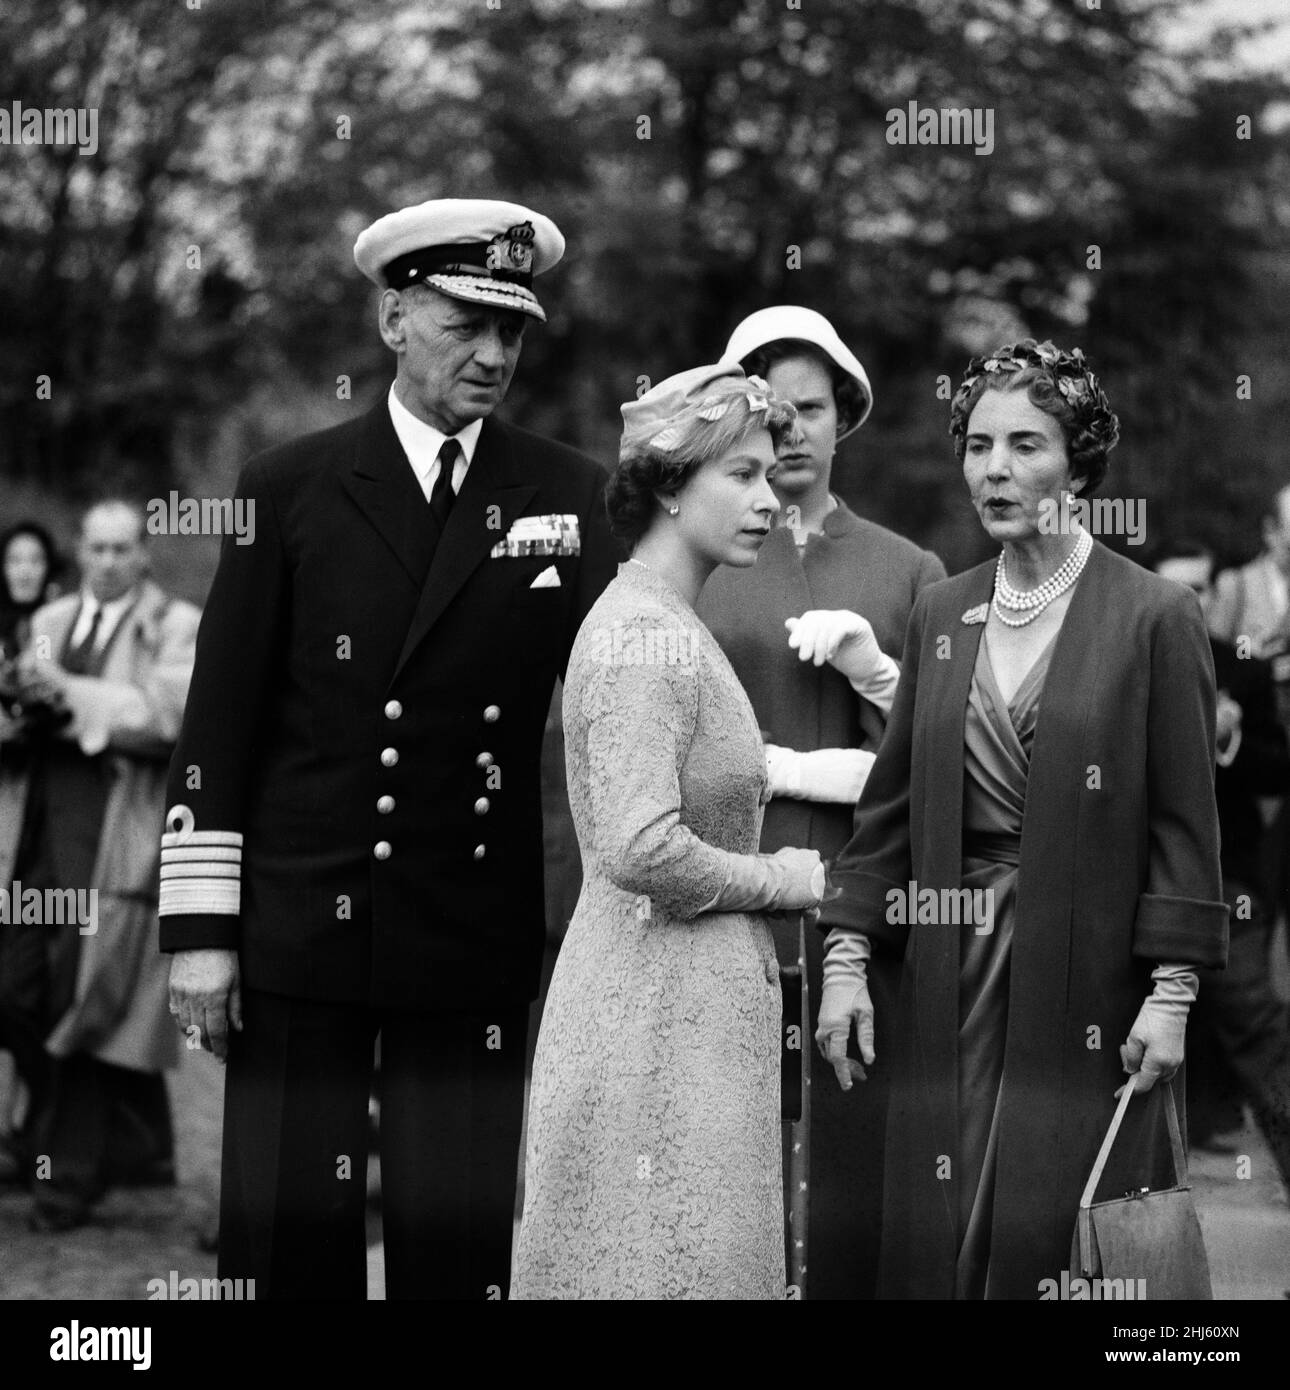 Visite de la reine Elizabeth II et du prince Philip, duc d'Édimbourg au Danemark.Le roi Frederik IX du Danemark, la reine Elizabeth II, la princesse Margrethe danoise et la reine Ingrid sont photographiés lors d'une visite au cimetière commémoratif du mouvement de résistance.23rd mai 1957. Banque D'Images